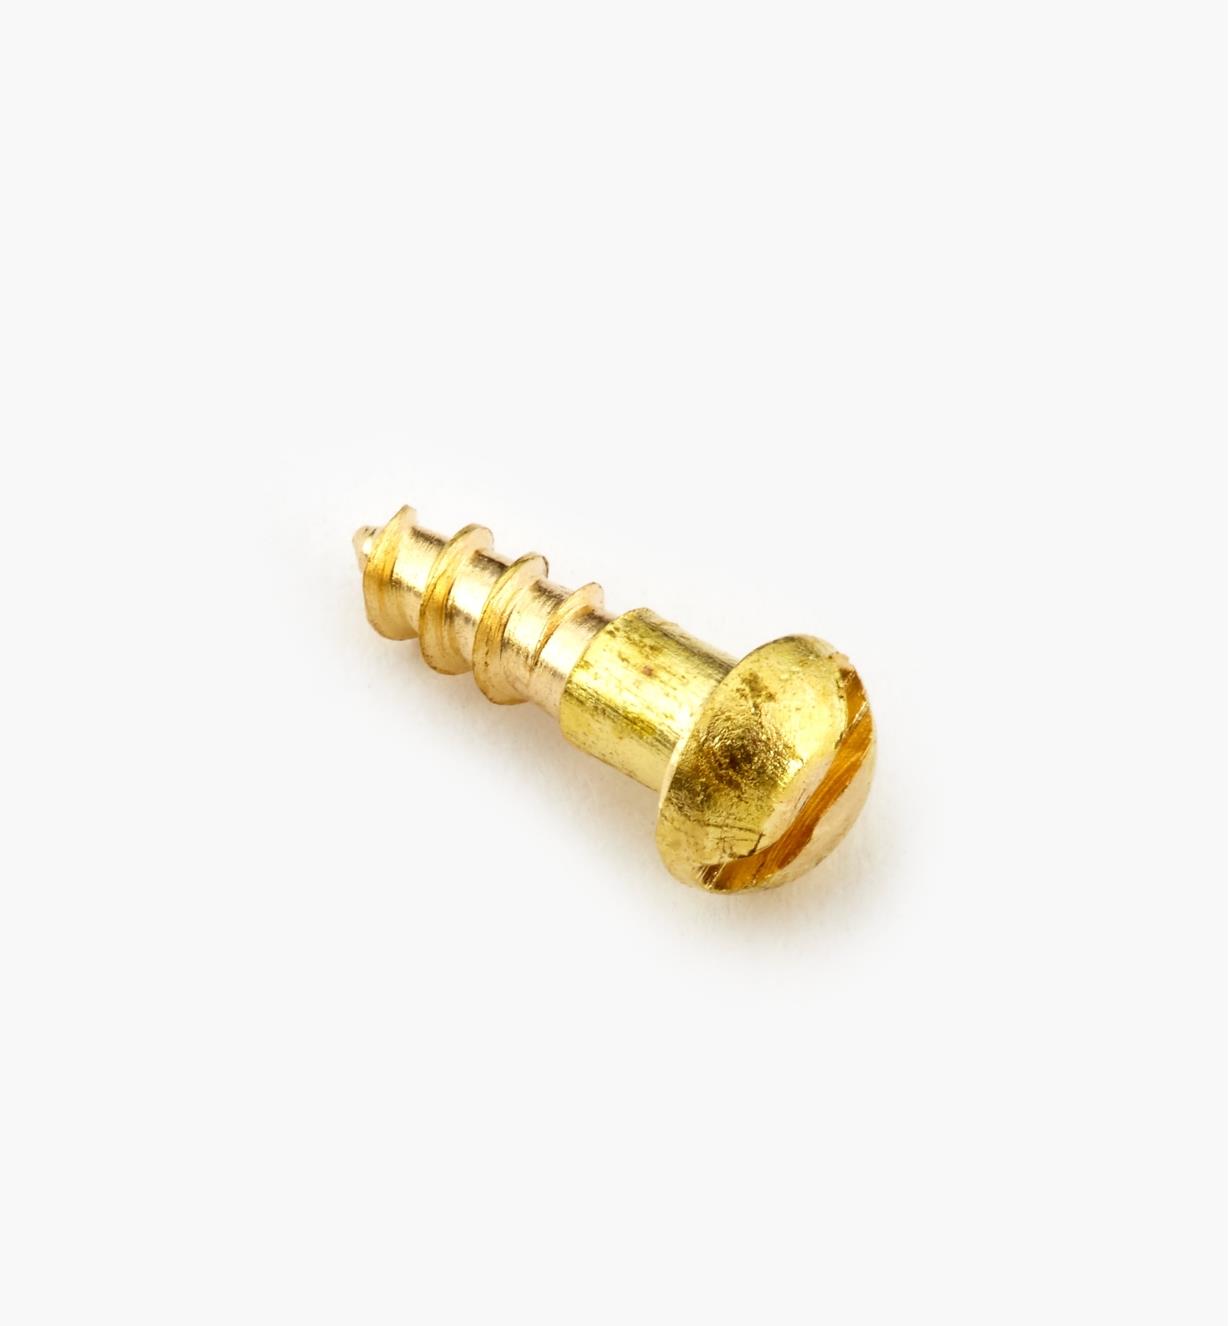 91Y0001X - #0, 1/4" Round Brass Screws, pkg. of 10